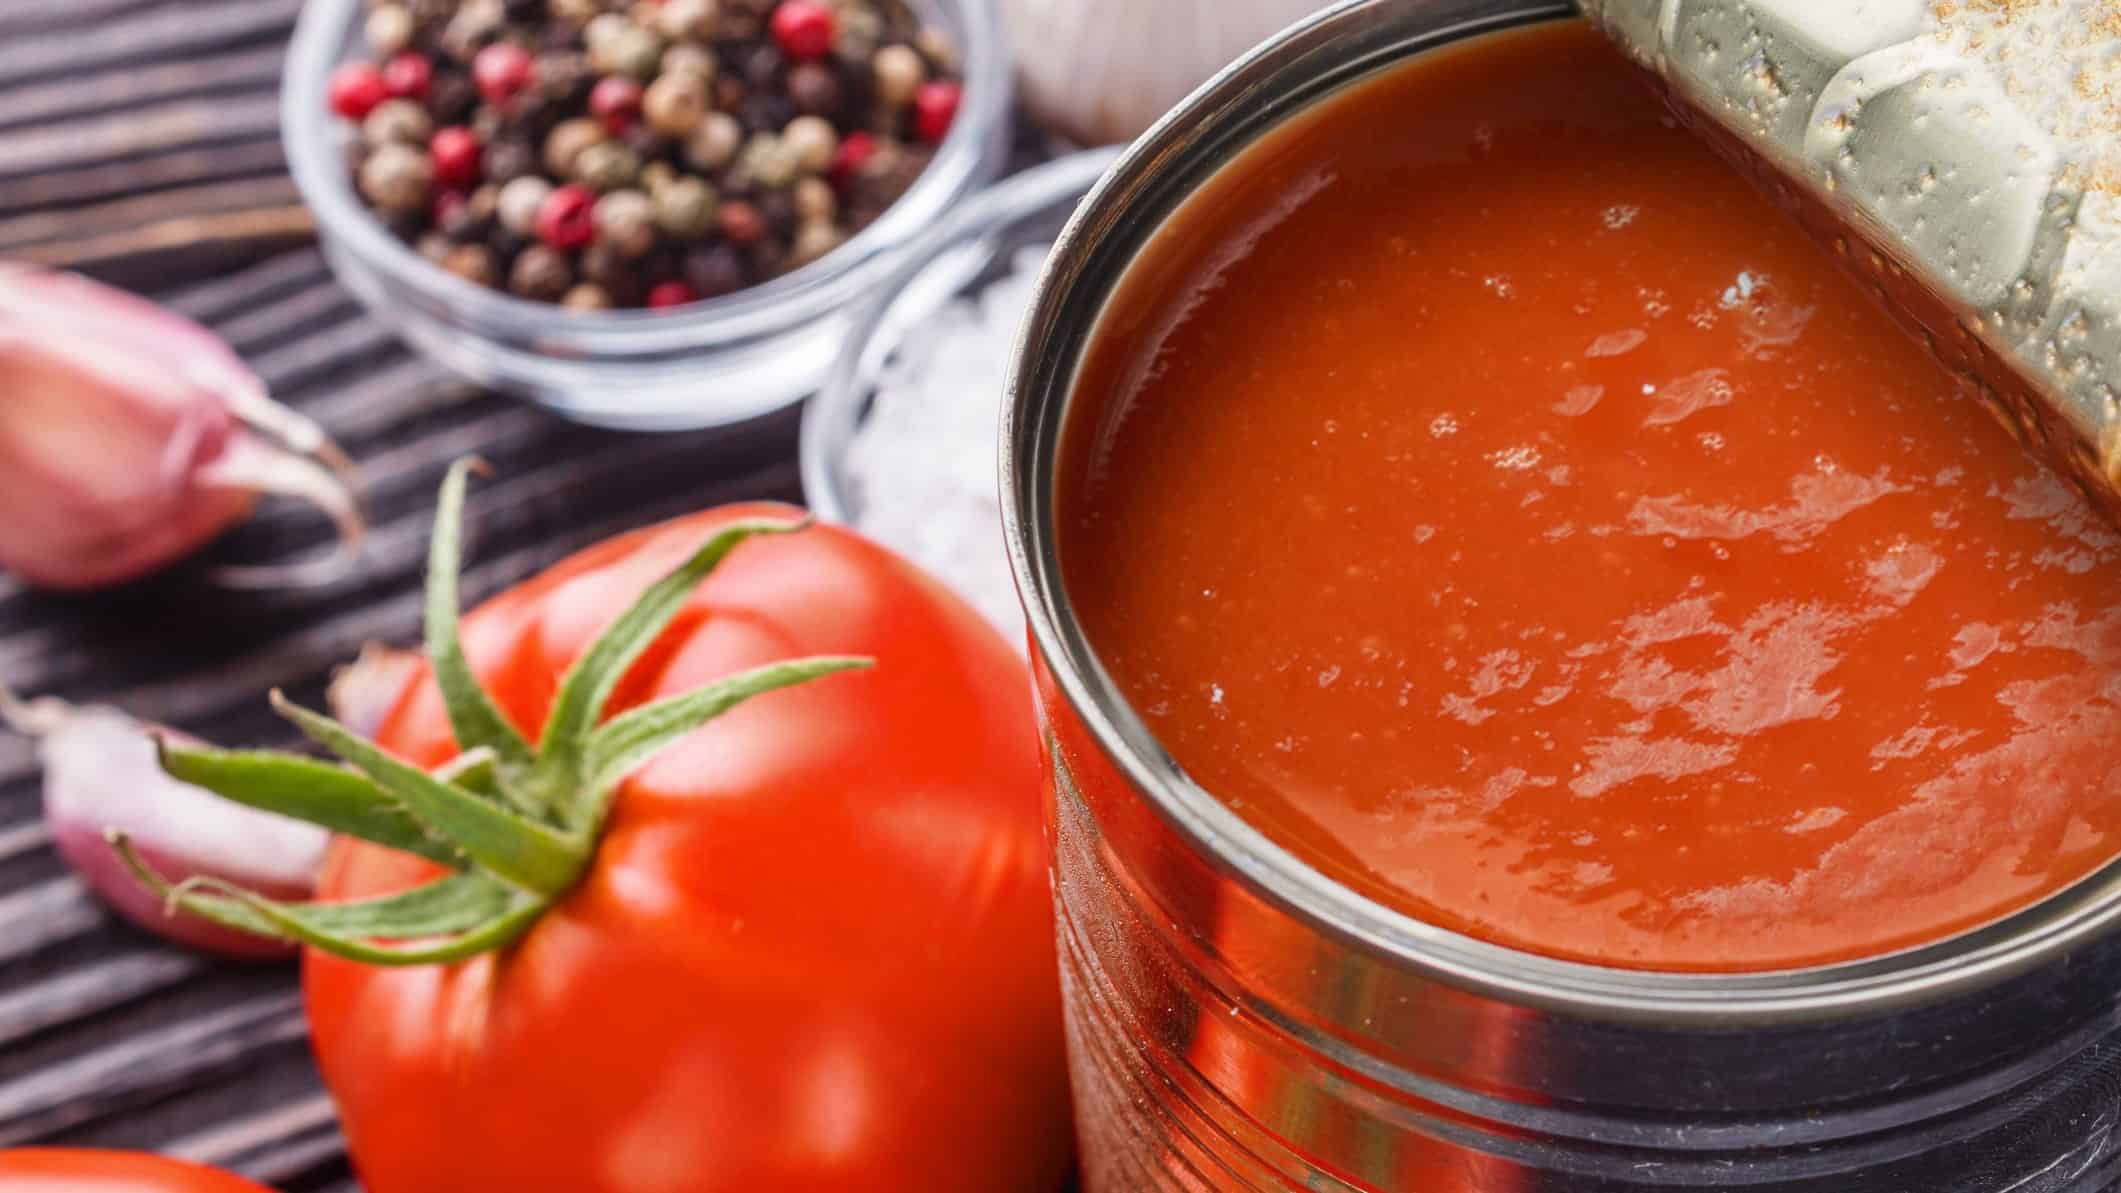 Une conserve de soupe aux tomates ouverte, avec une tomate fraîche, des échalotes et du poivre en grain